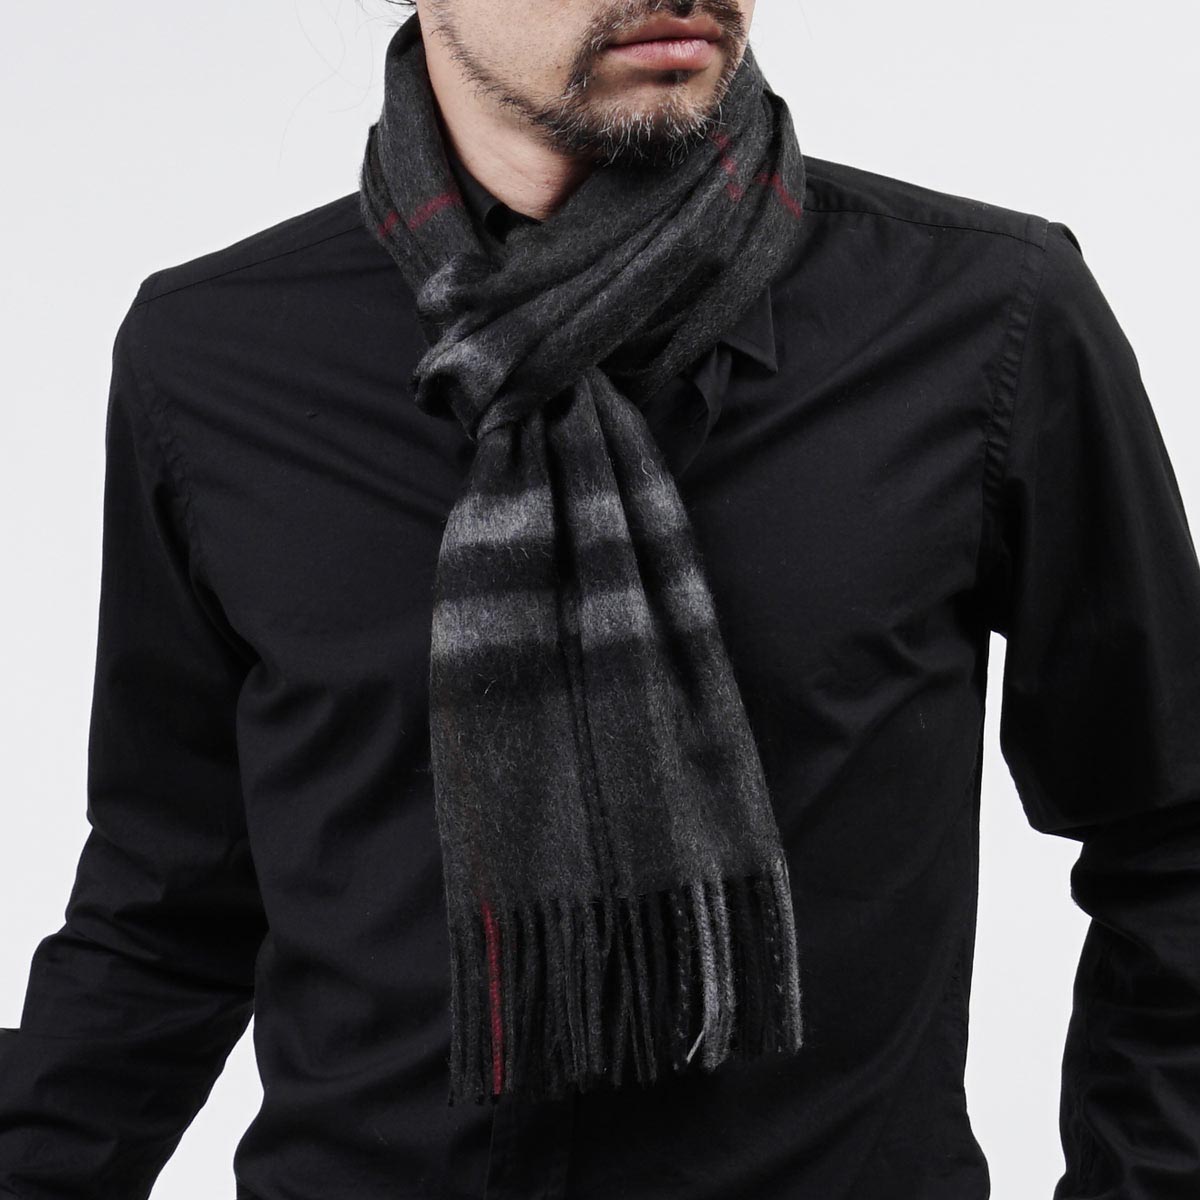 Cashmere scarf for men burberry /burberry cashmere scarf  TICAEXR